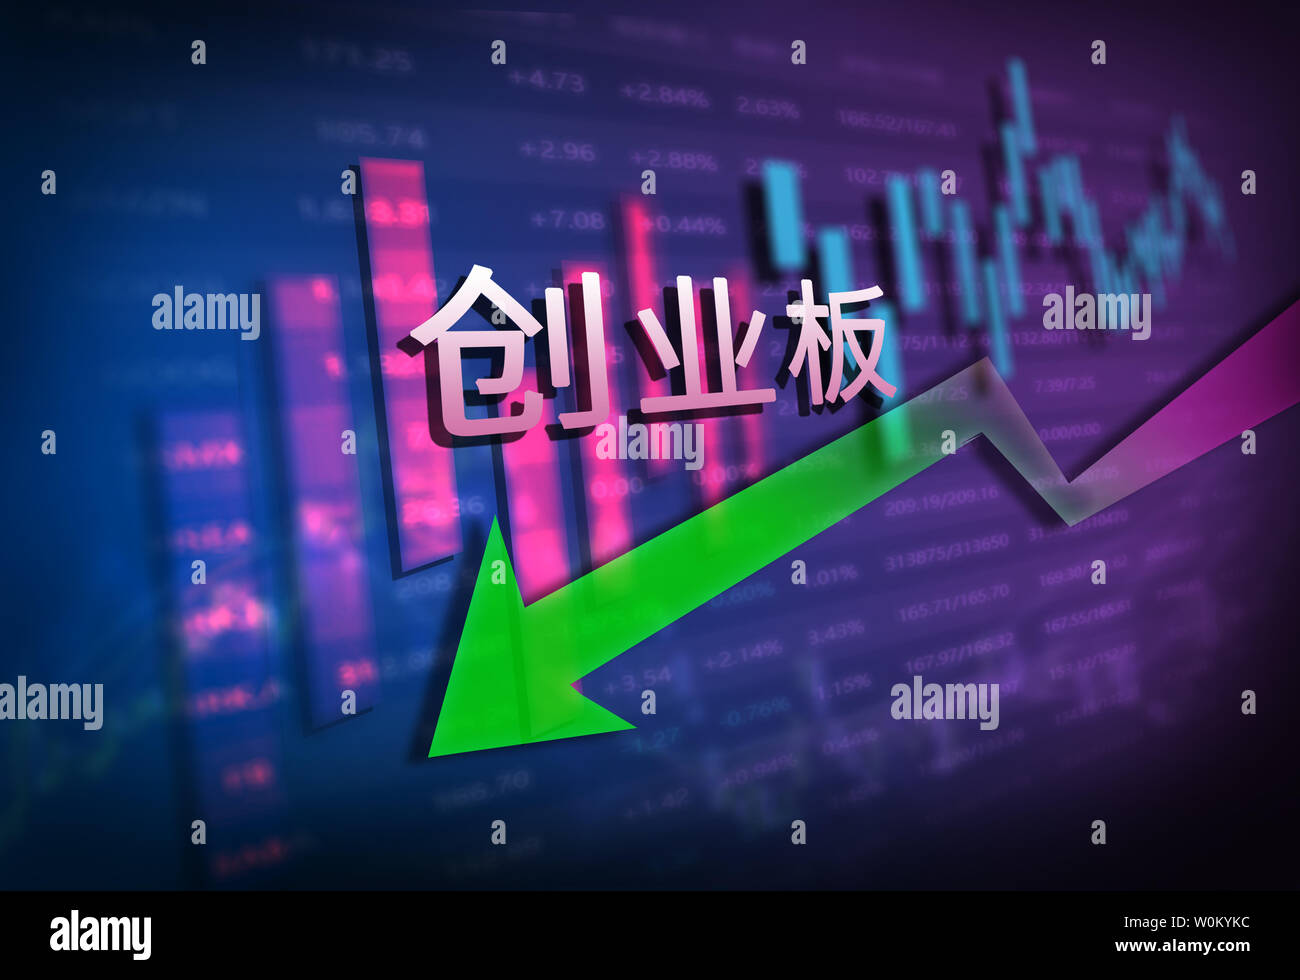 Stock Market Data Charts